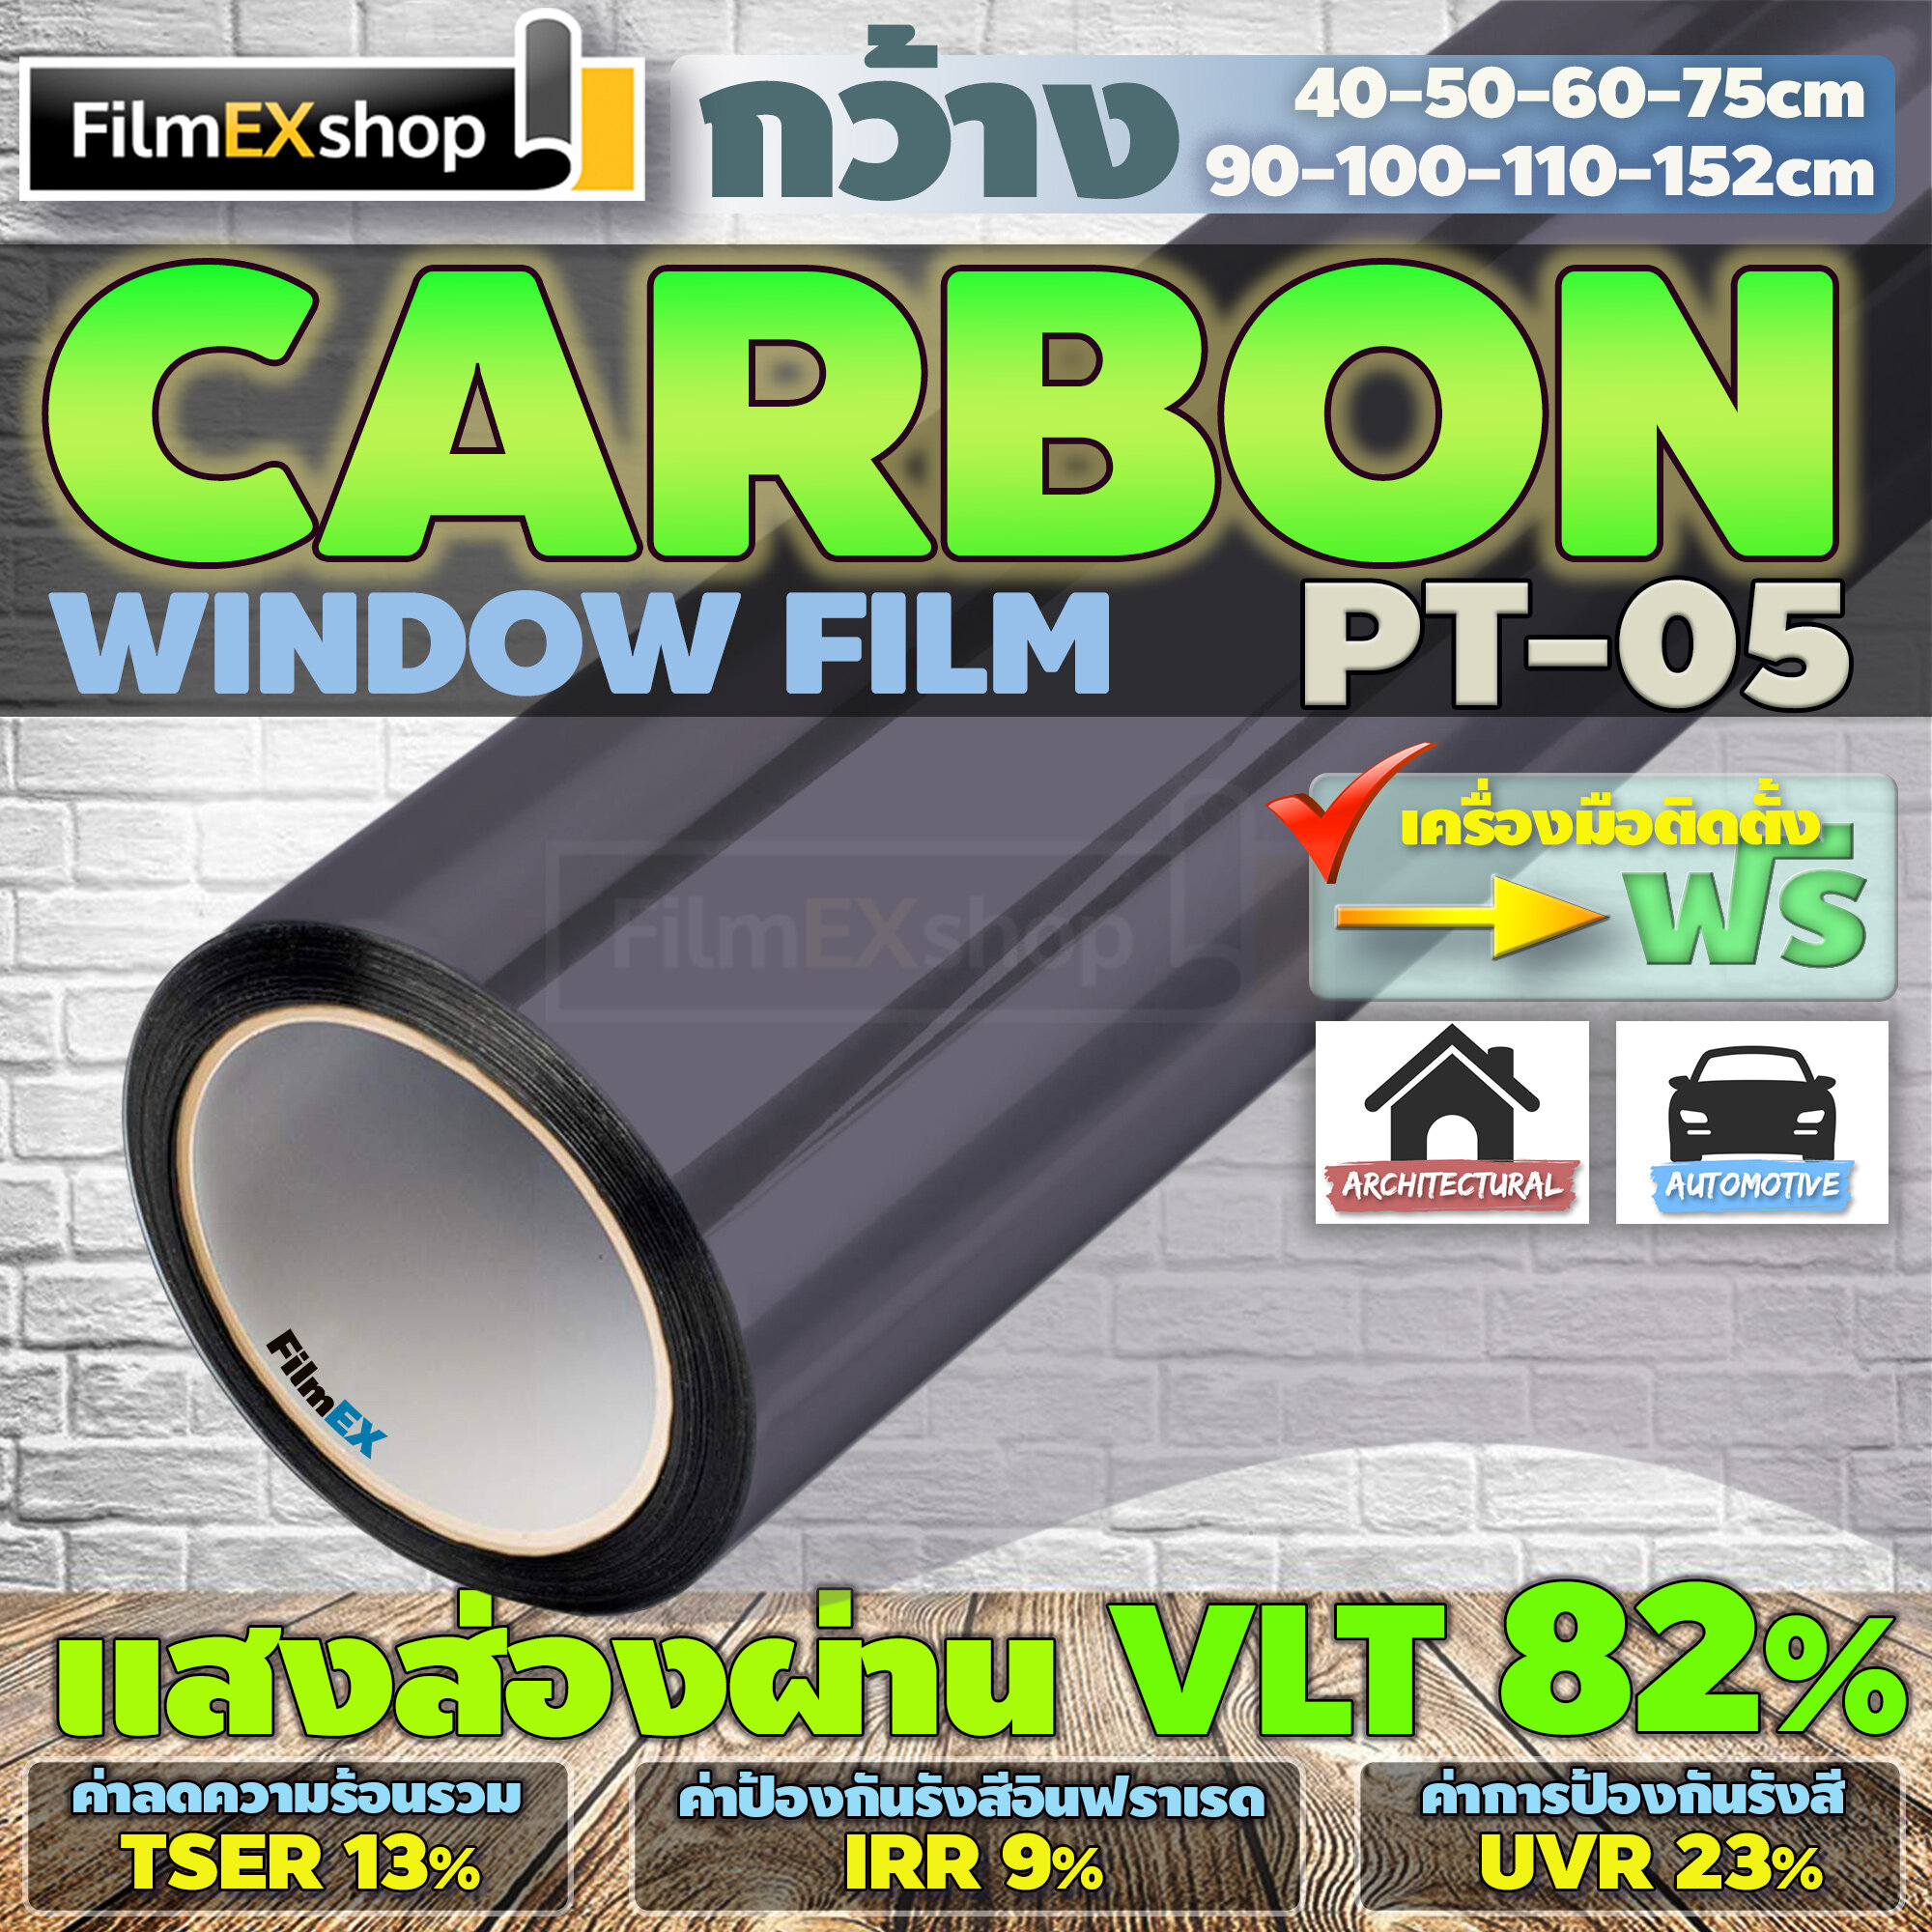 PT-05  VLT 82%  ฟิล์มคาร์บอน Carbon Window Film ฟิล์มกรองแสง ฟิล์มติดกระจก ฟิล์มกรองแสงรถยนต์ (ราคาต่อเมตร)